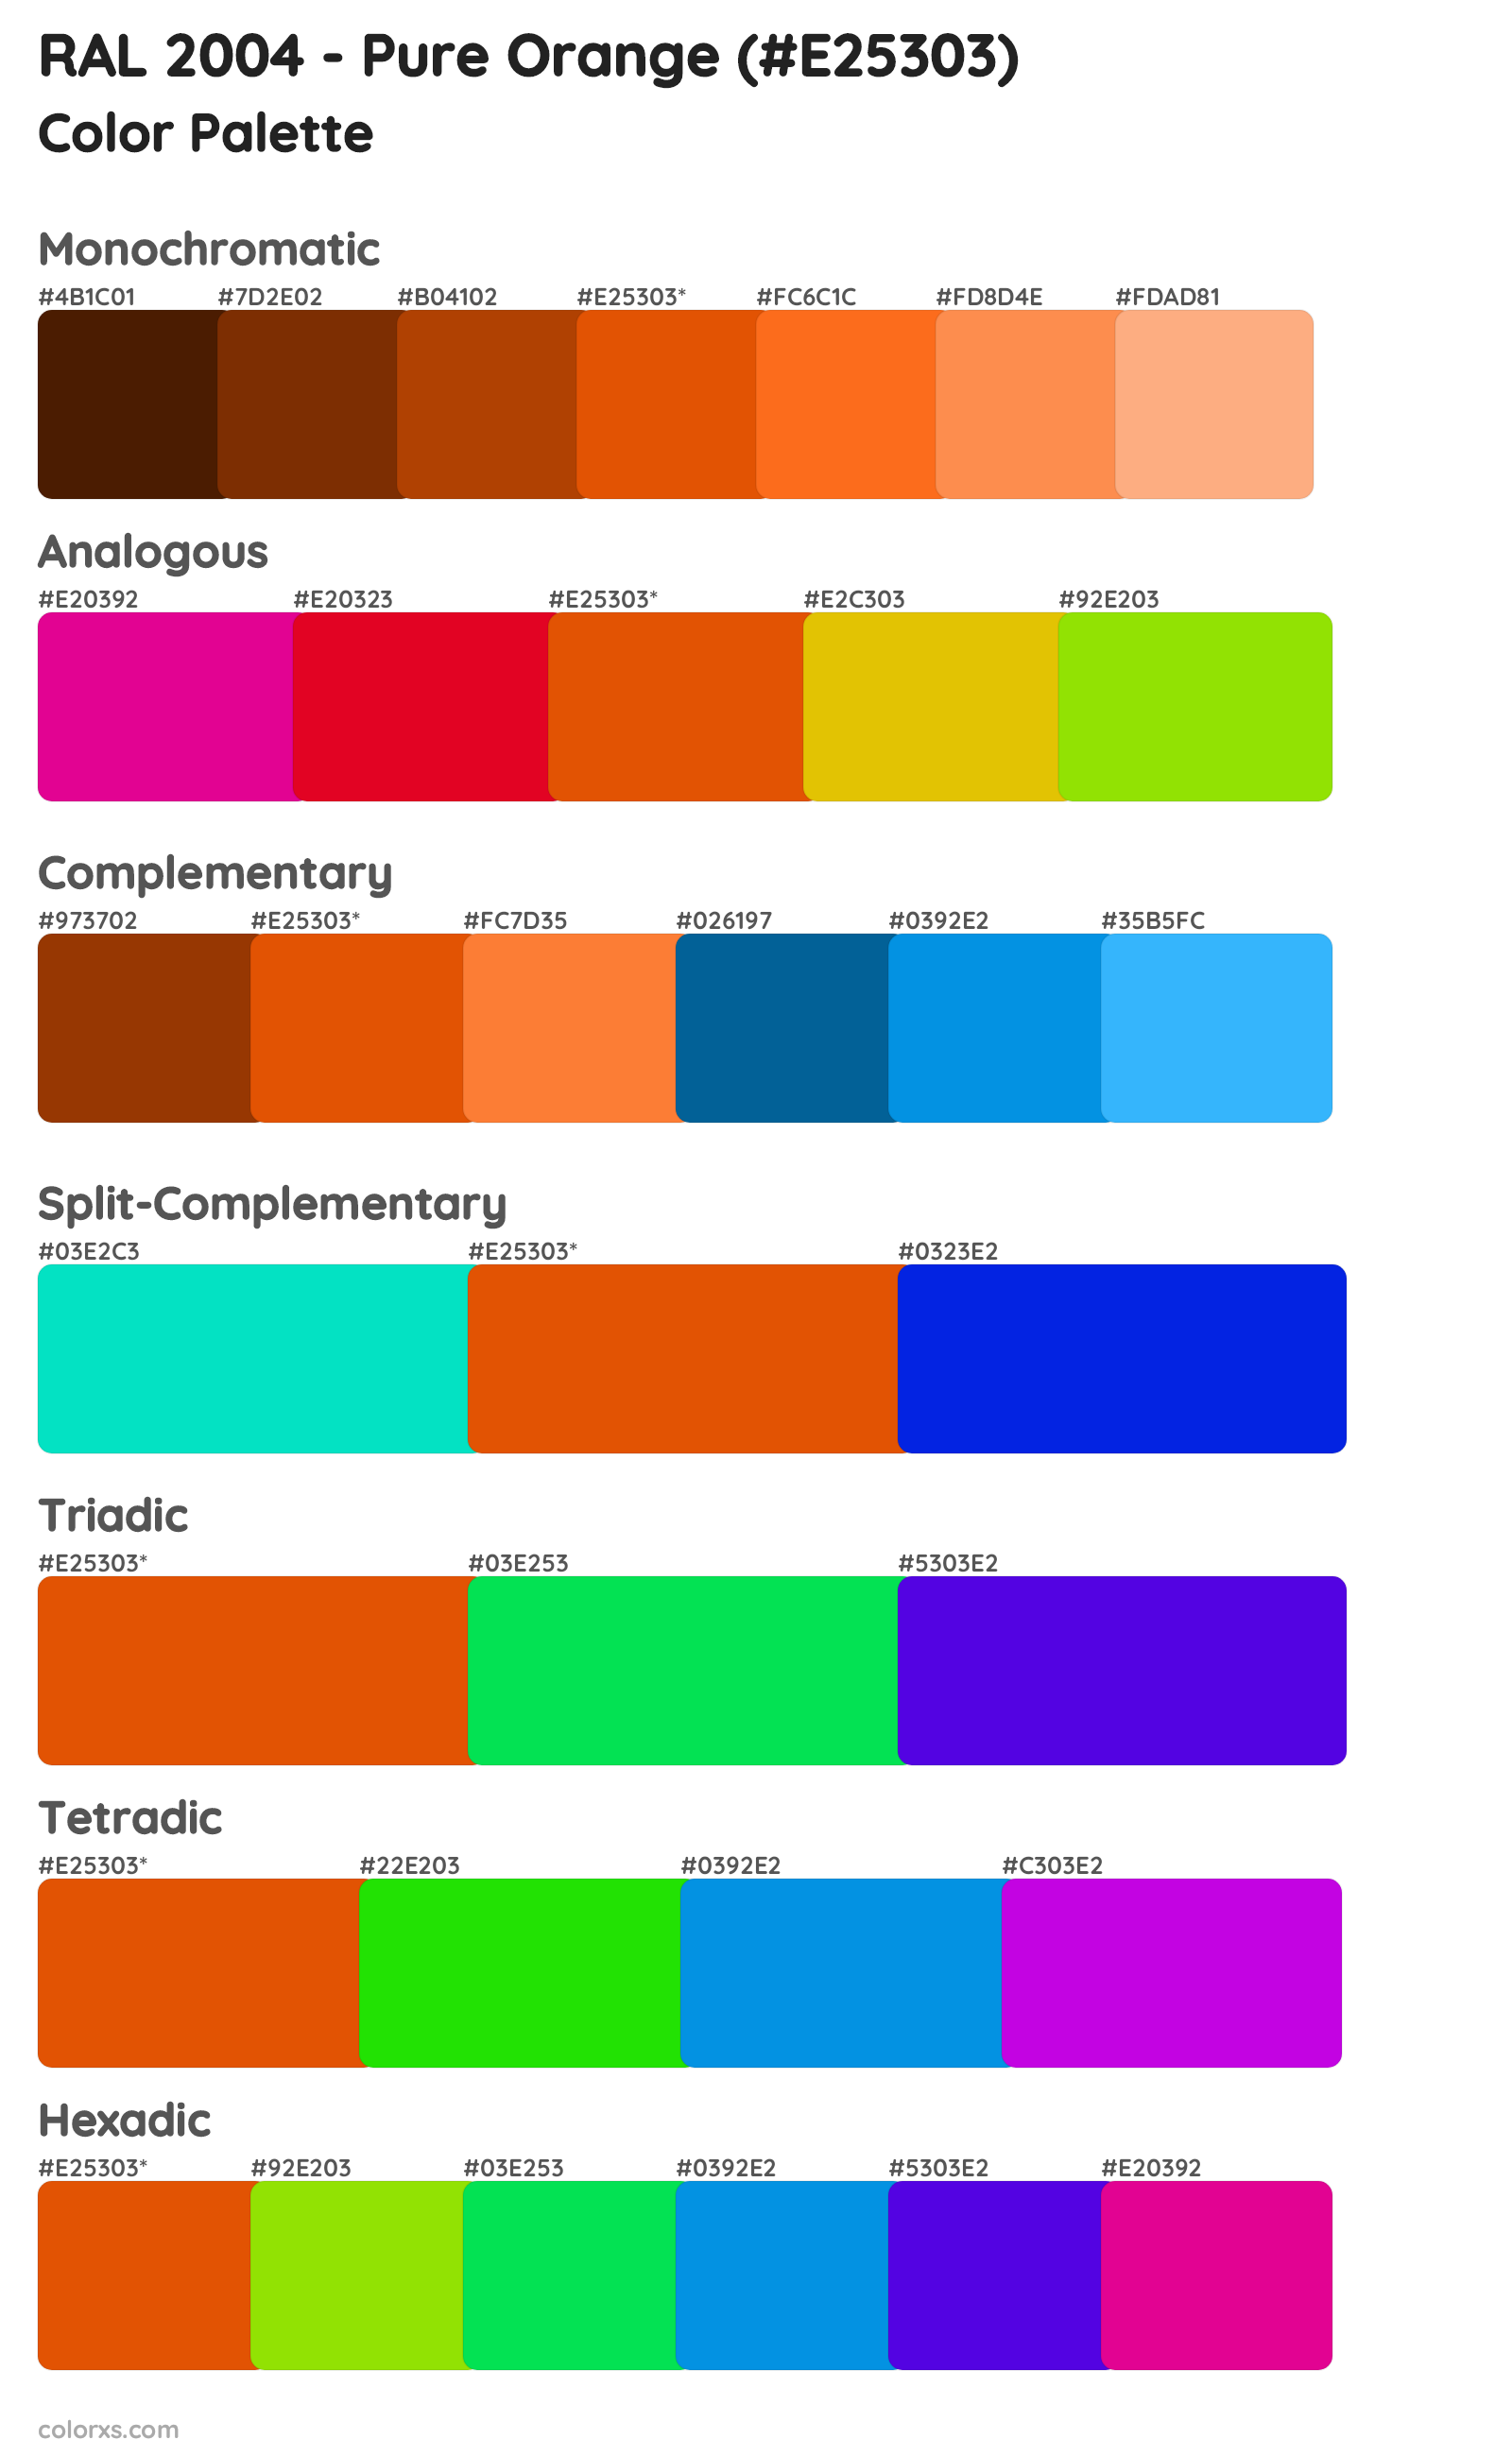 RAL 2004 - Pure Orange Color Scheme Palettes